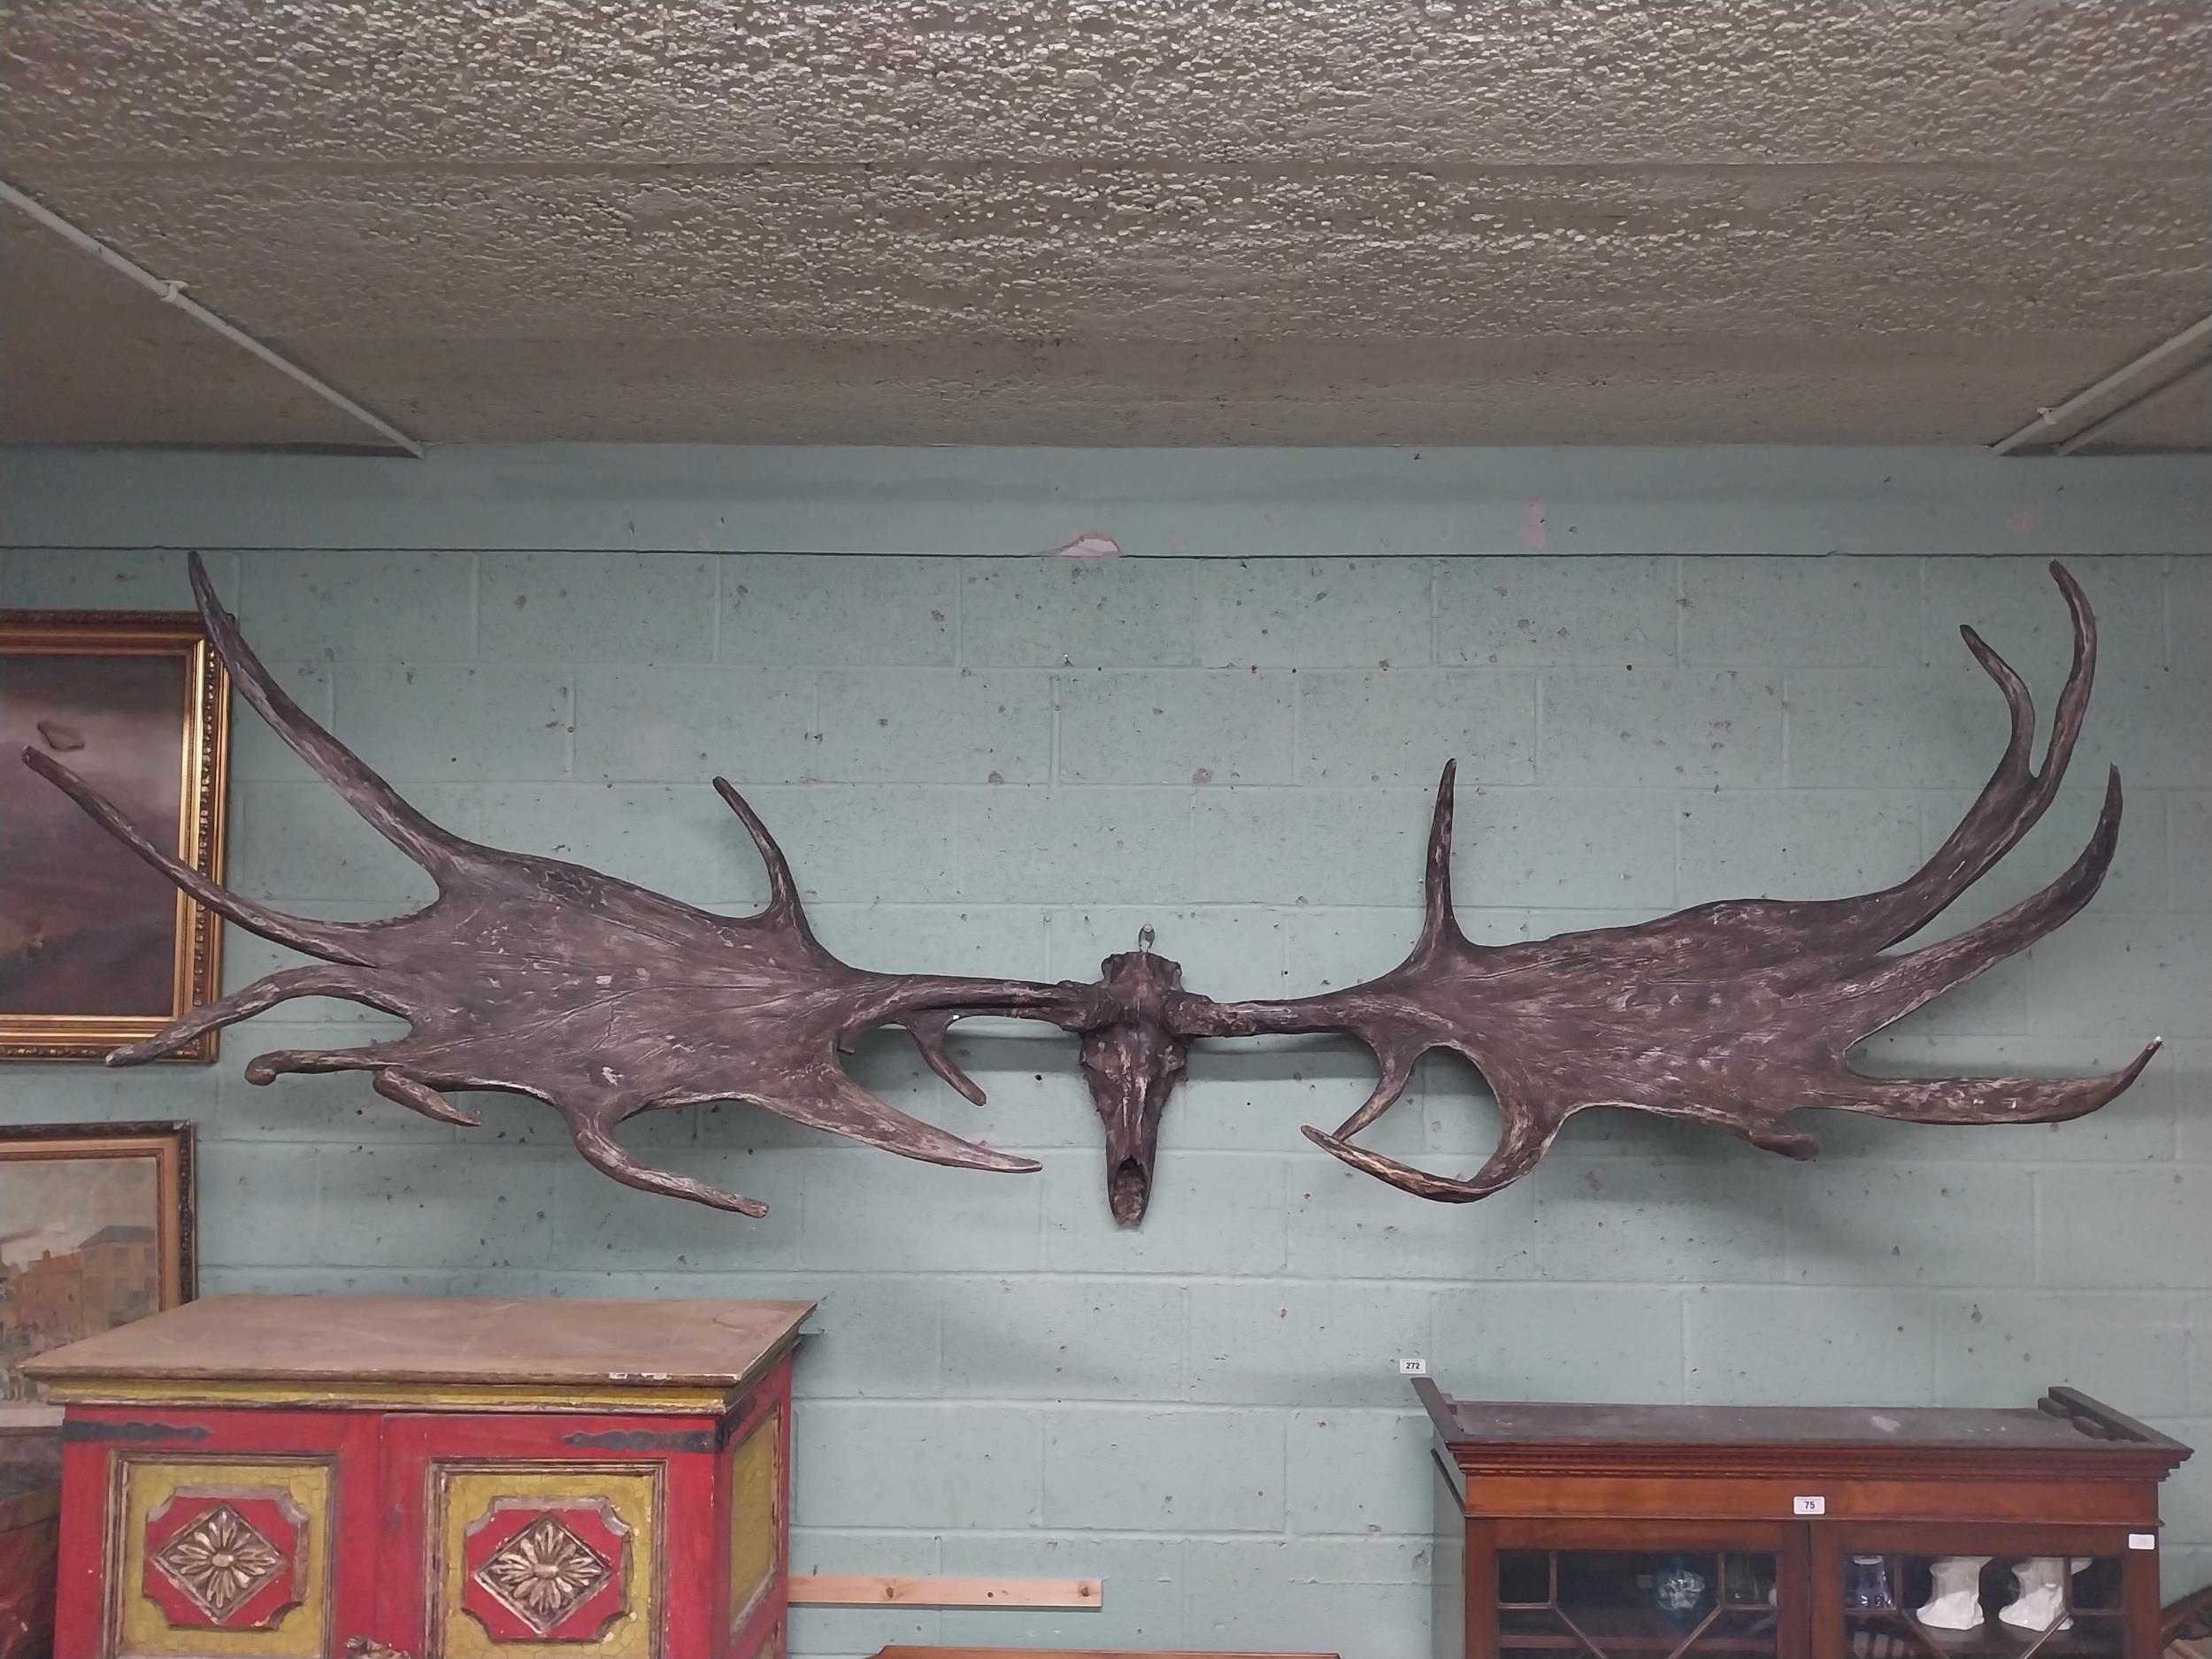 Rare resin cast of original Irish elk Antlers and skull {118 cm H x 310 cm W x 105 cm D}.